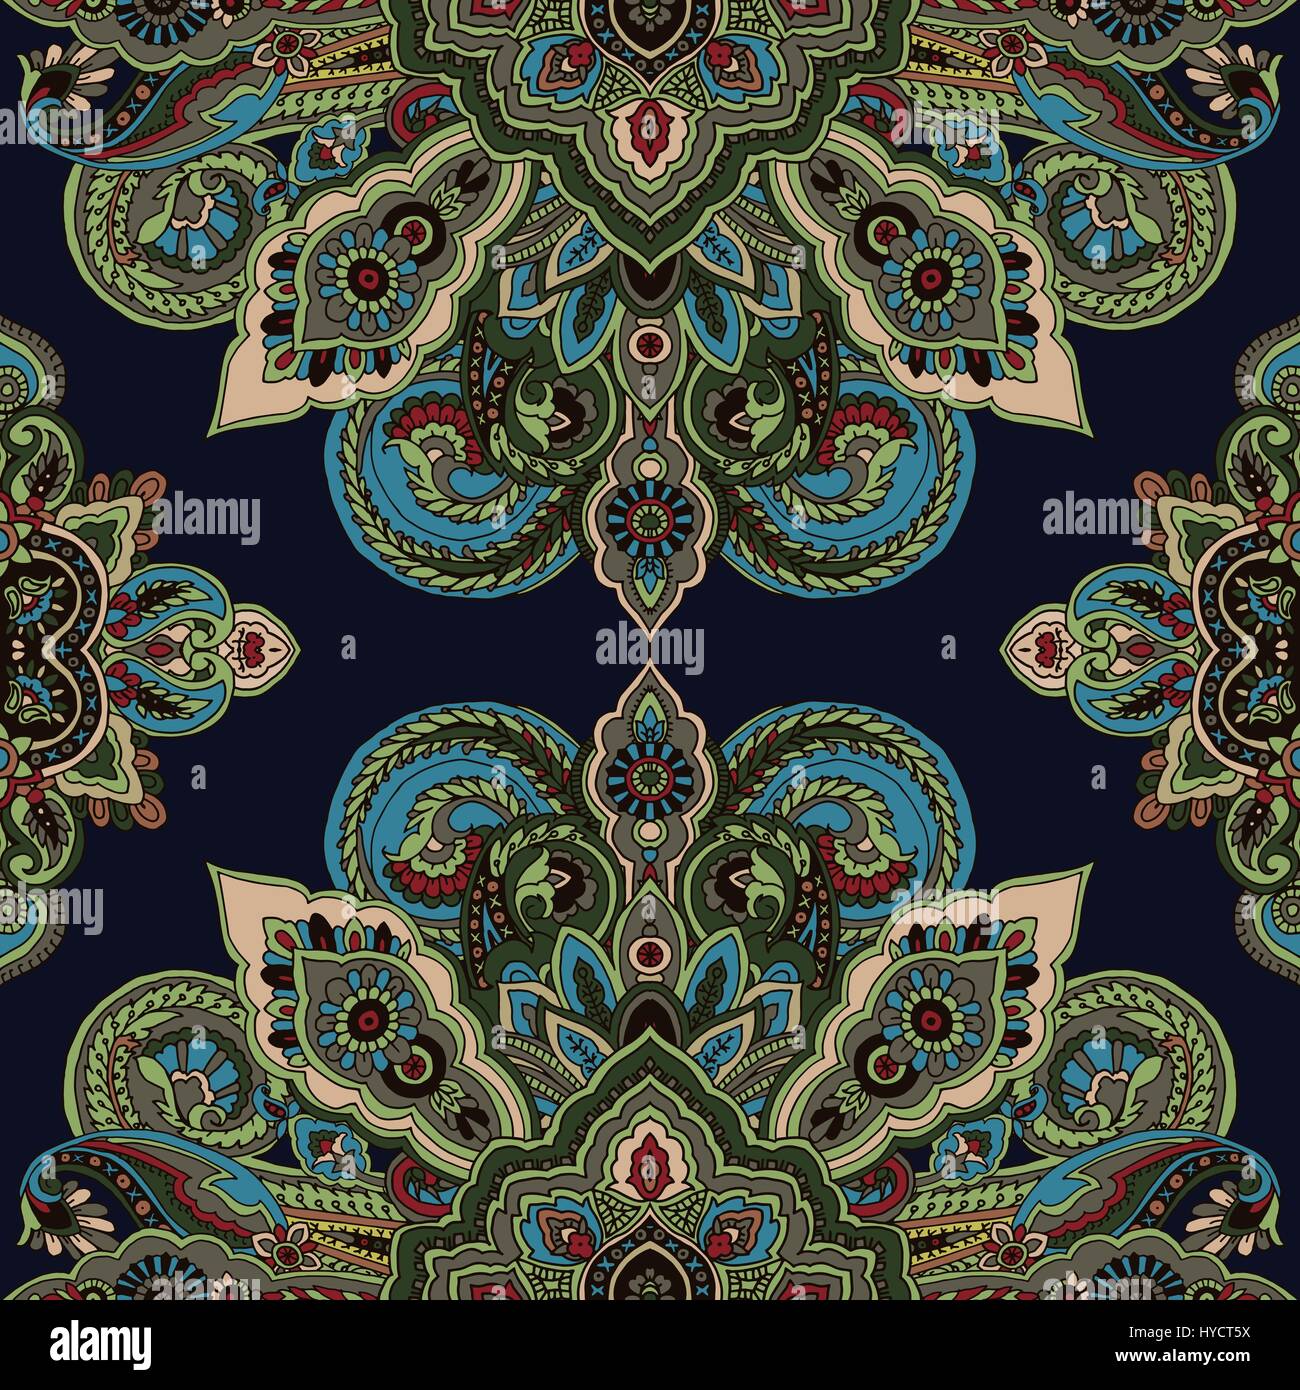 Abstrakte geometrische paisley Kreismuster. Traditionelle orientalische Mandalas Ornament. Vintage Grün-Töne auf dunkelblauem Hintergrund. Textil-Design. Stock Vektor